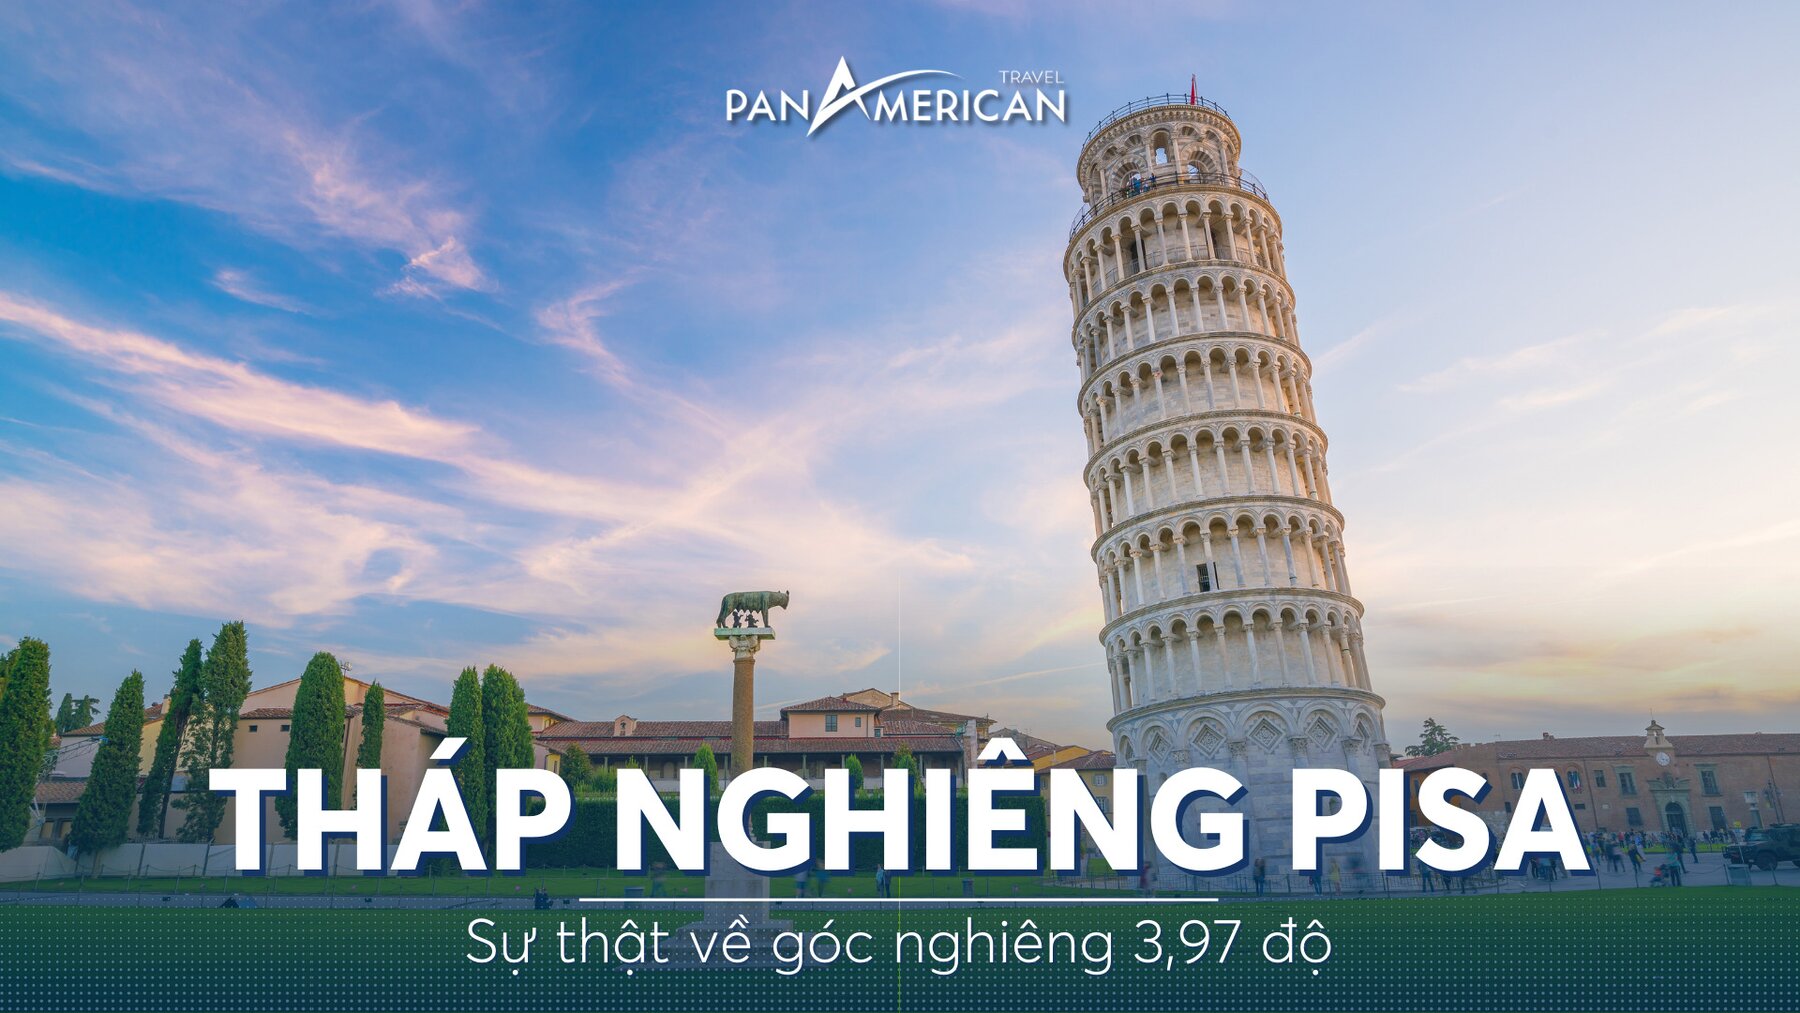 Tháp nghiêng Pisa và sự thật về góc nghiêng 3,97 độ